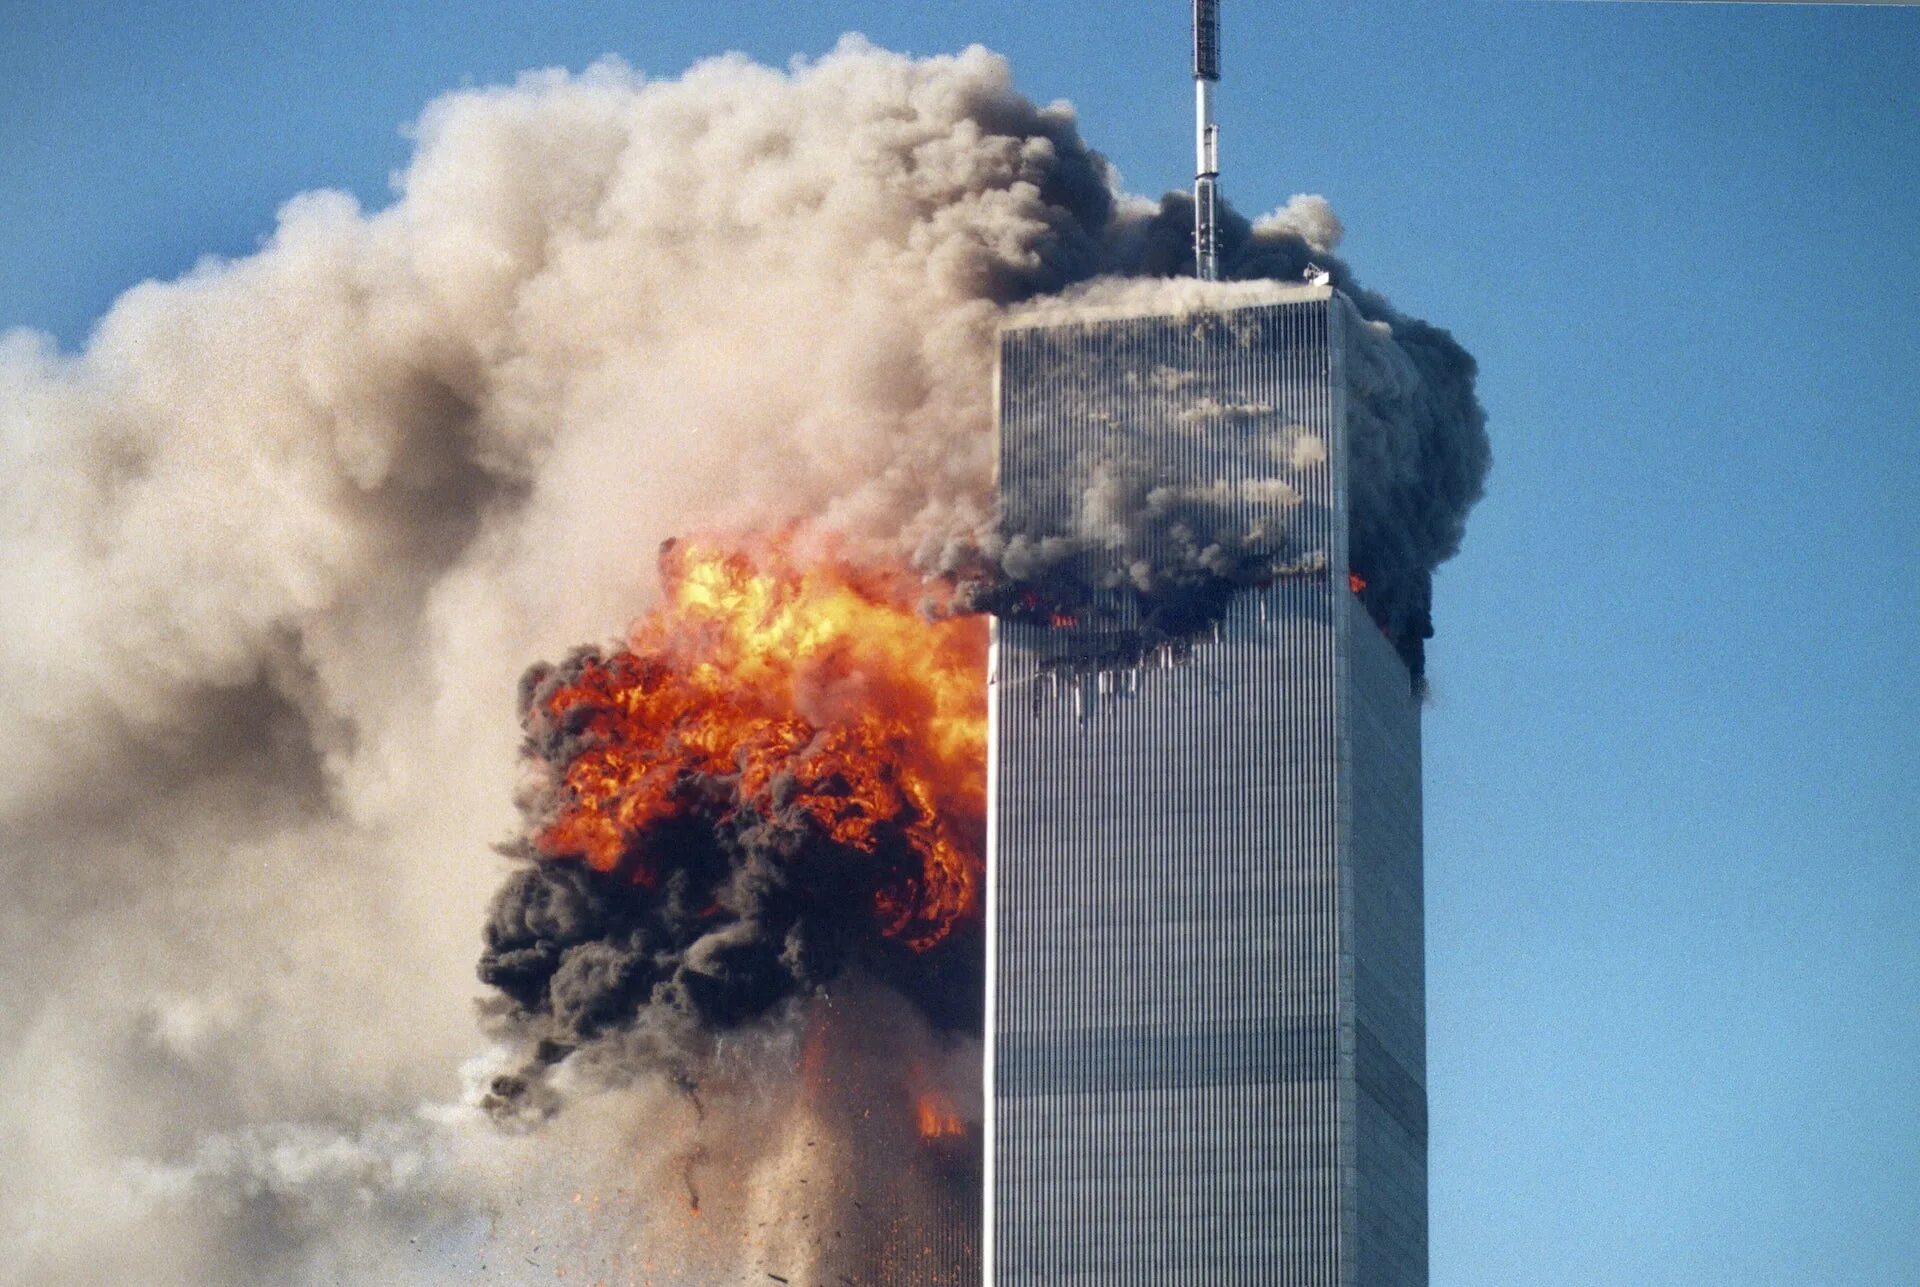 Разговор 11 сентября. Башни Близнецы 11 сентября. Горящие башни ВТЦ 11 сентября 2001 года.